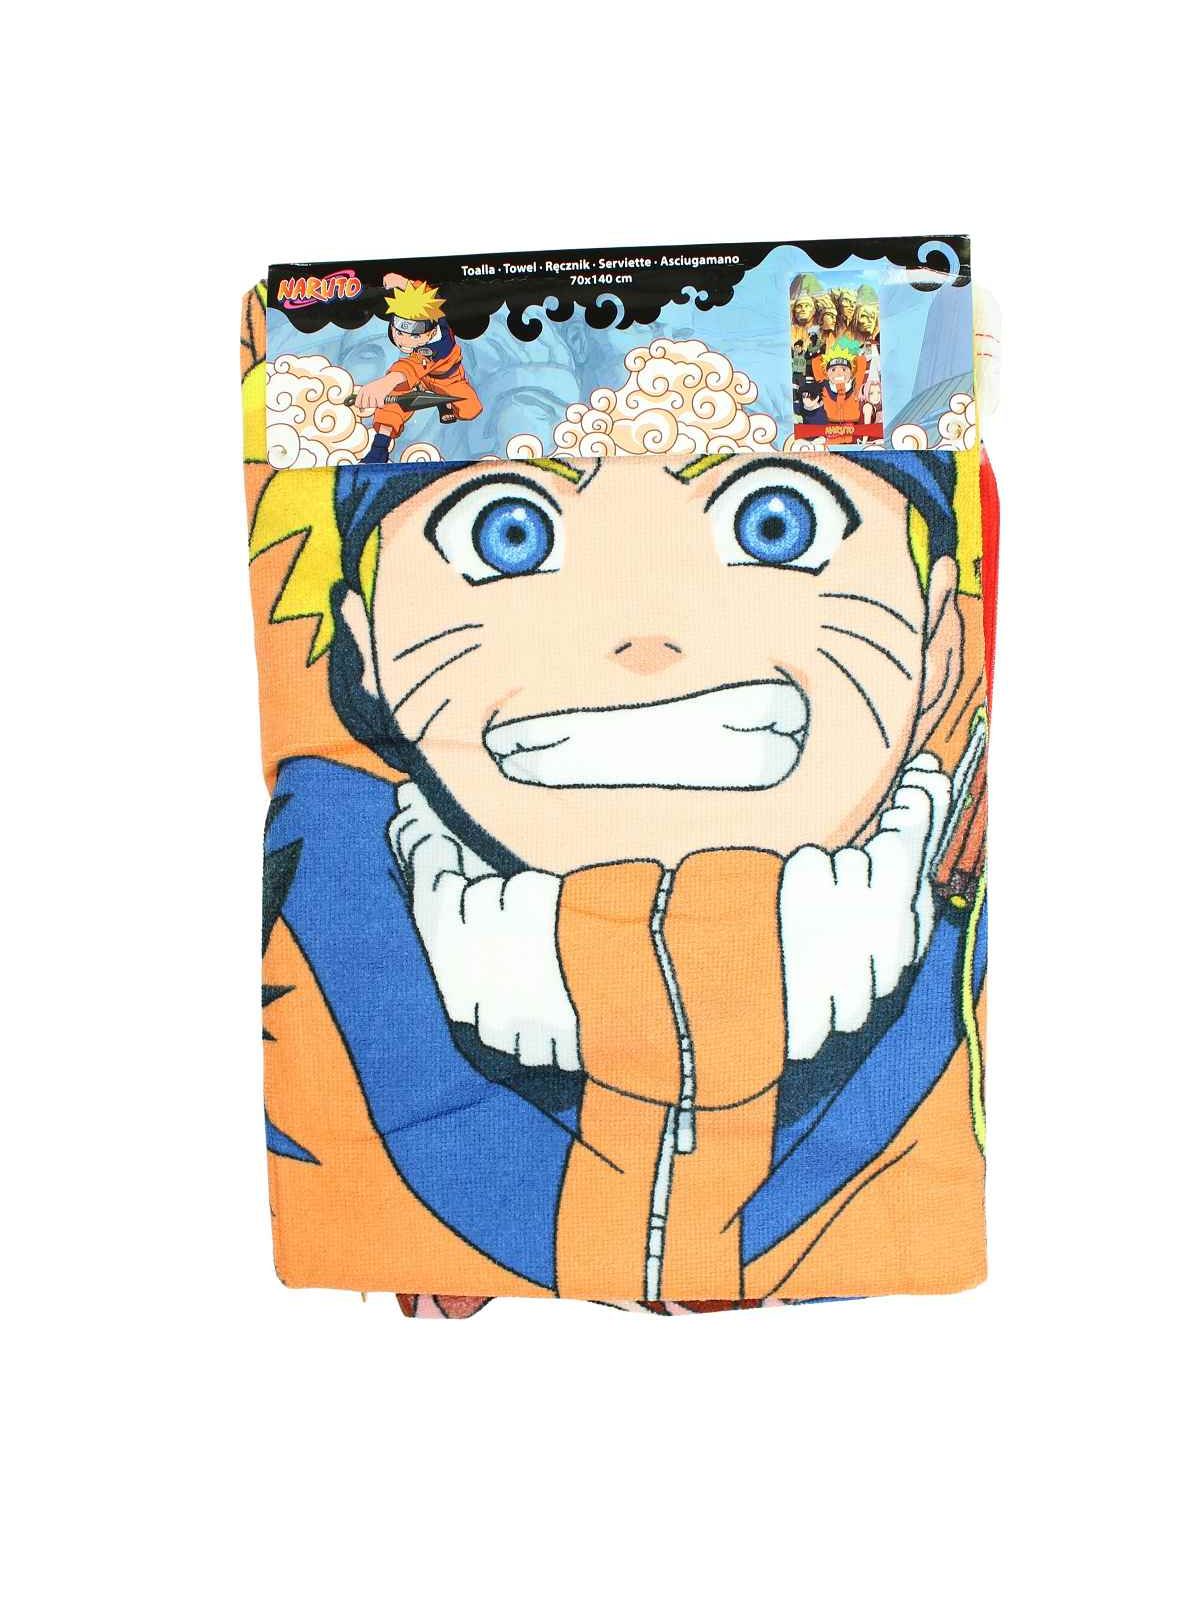 Naruto Asciugamano